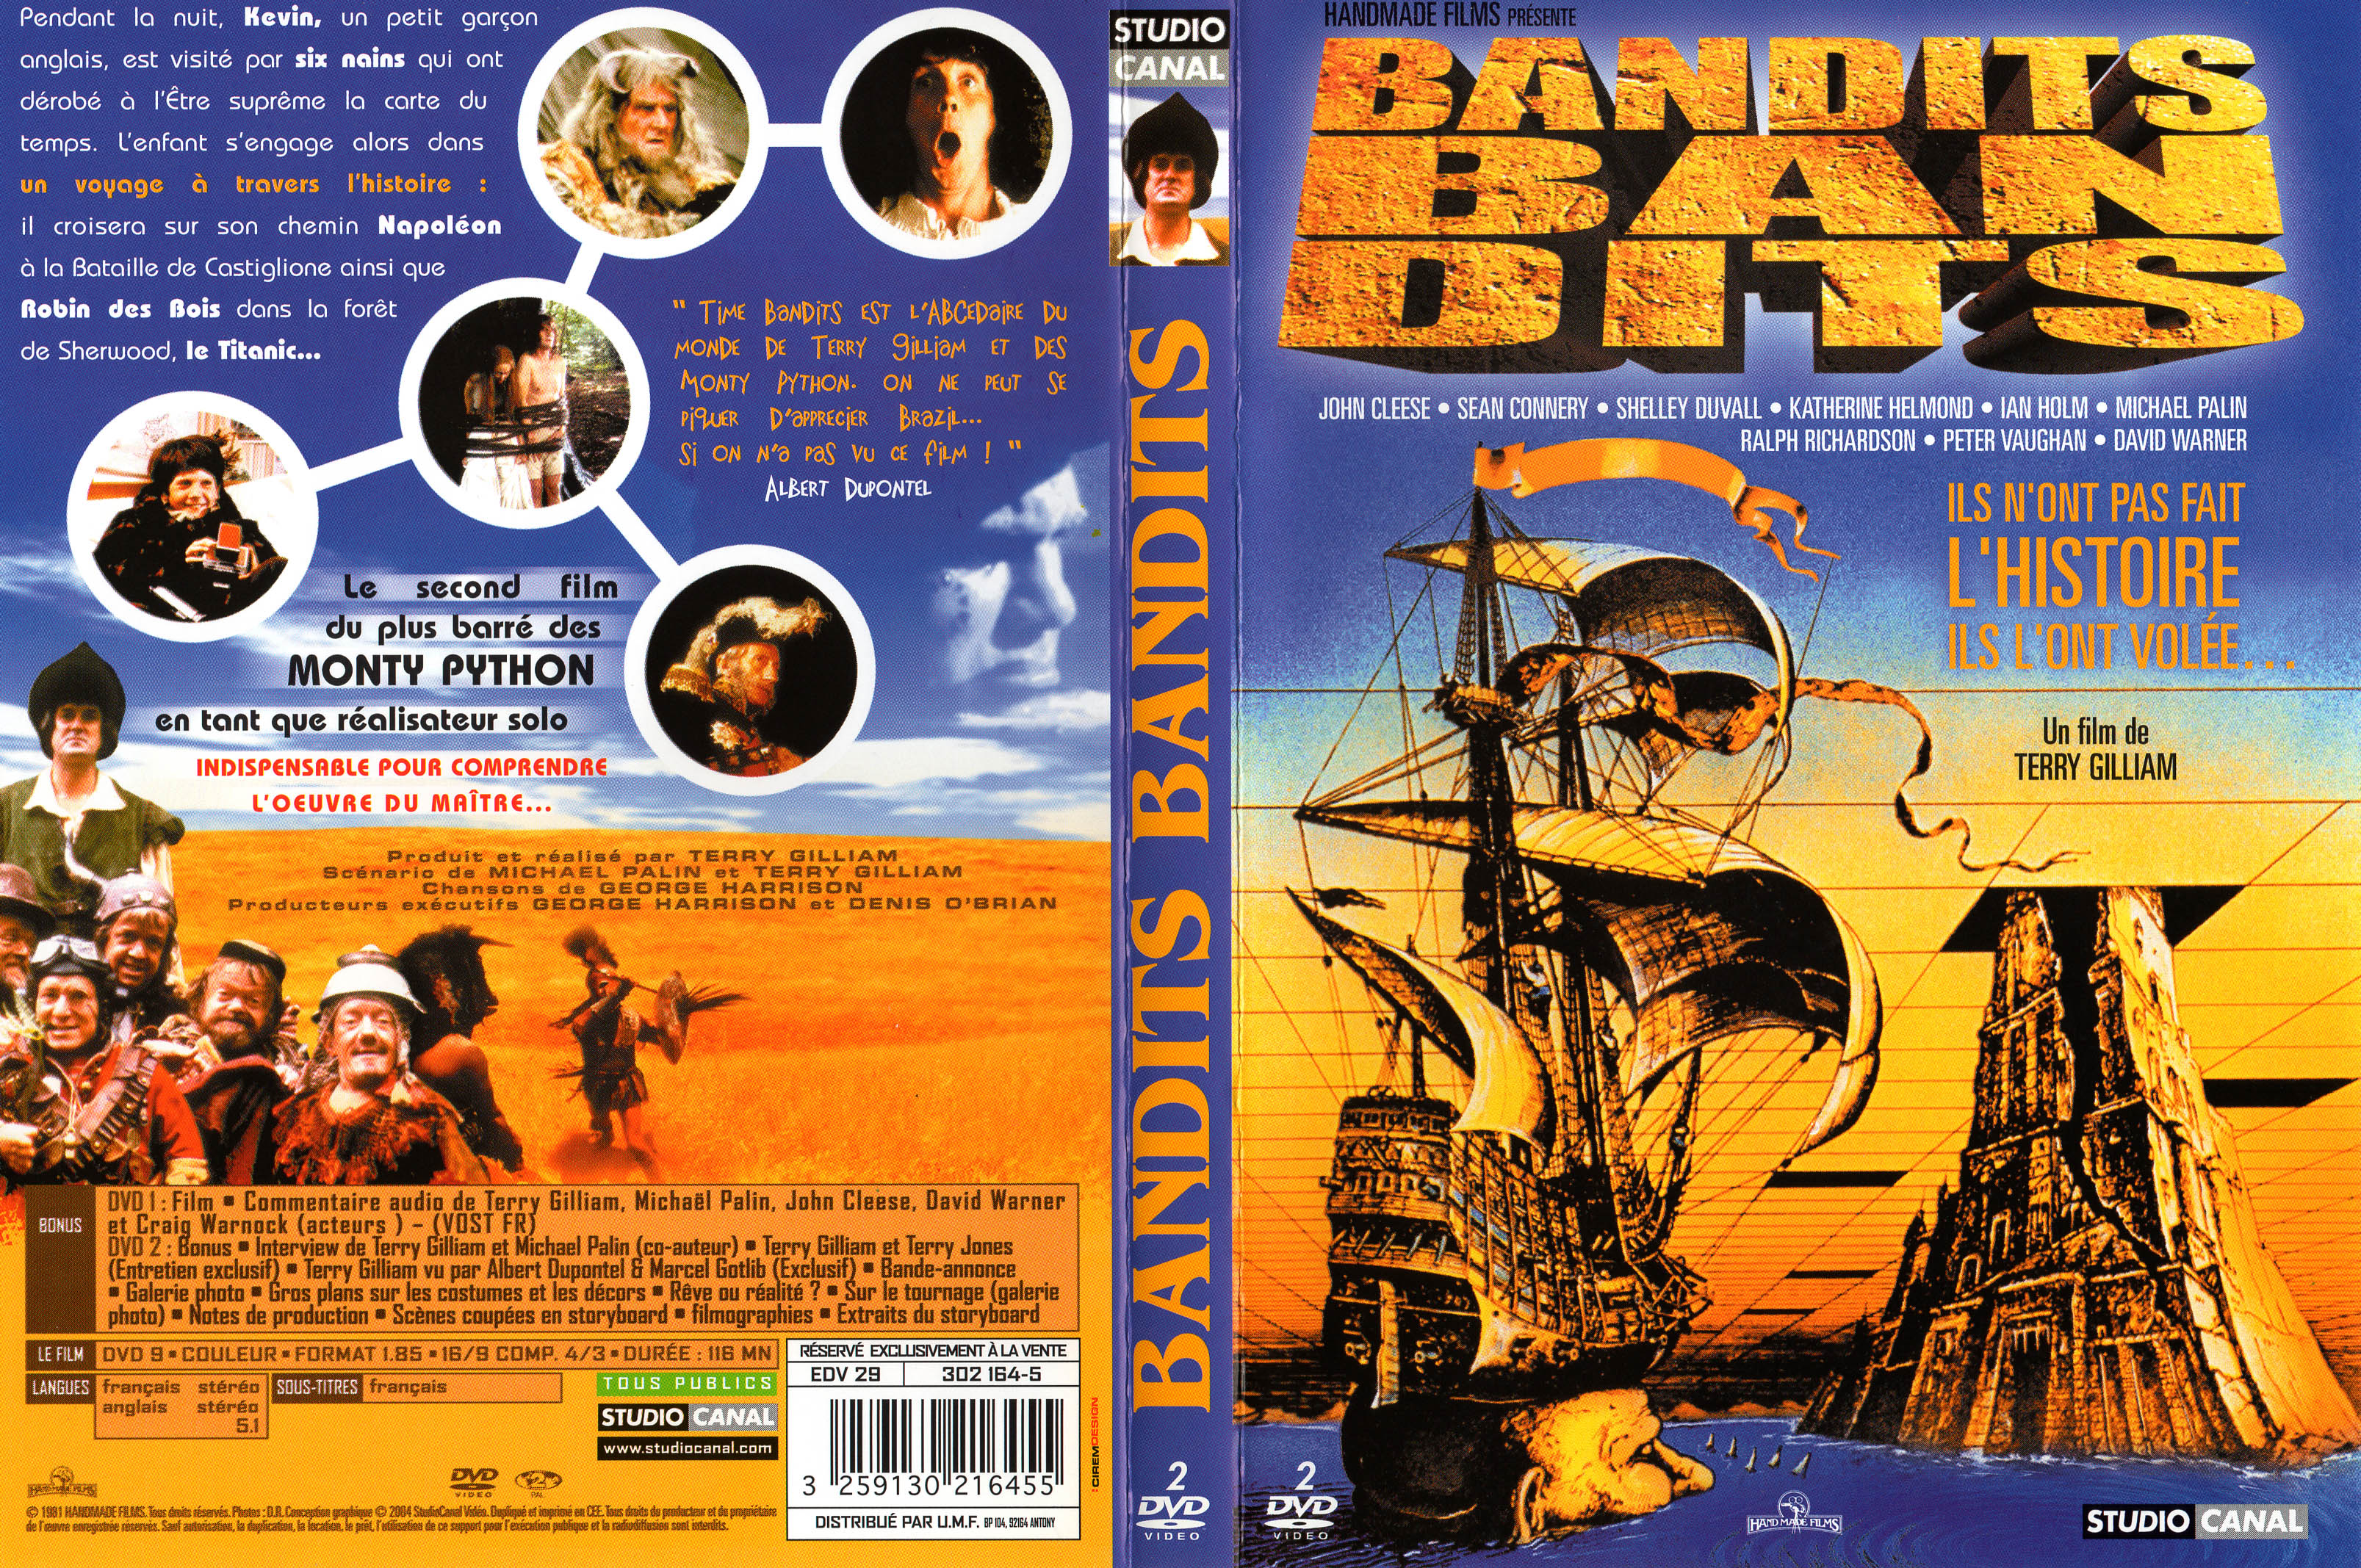 Jaquette DVD Bandits, bandits v2